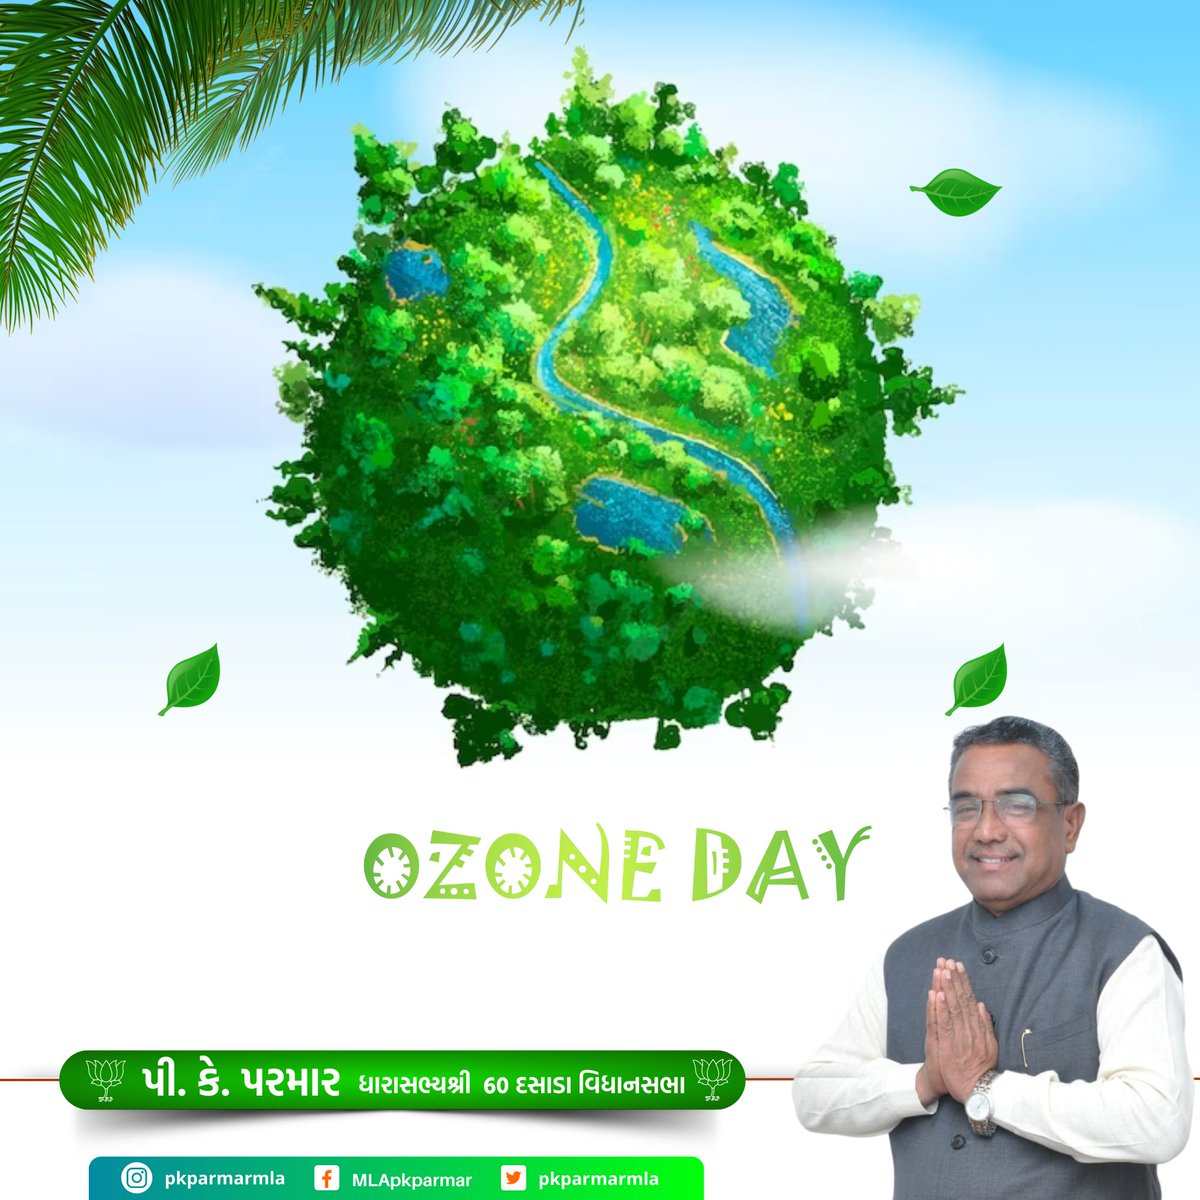 सूर्य के तीव्र किरणों से पृथ्वी की रक्षा में मददरूप ओज़ोन परत के संरक्षण के संदर्भ में जागृति फैलाने हेतु मनाए जाने वाले 'विश्व ओजोन दिवस' के अवसर पर आइए हम सब पर्यावरण संरक्षण हेतु प्रतिबद्ध बने।

#InternationalOzoneDay #OzoneDay #ozonelayer